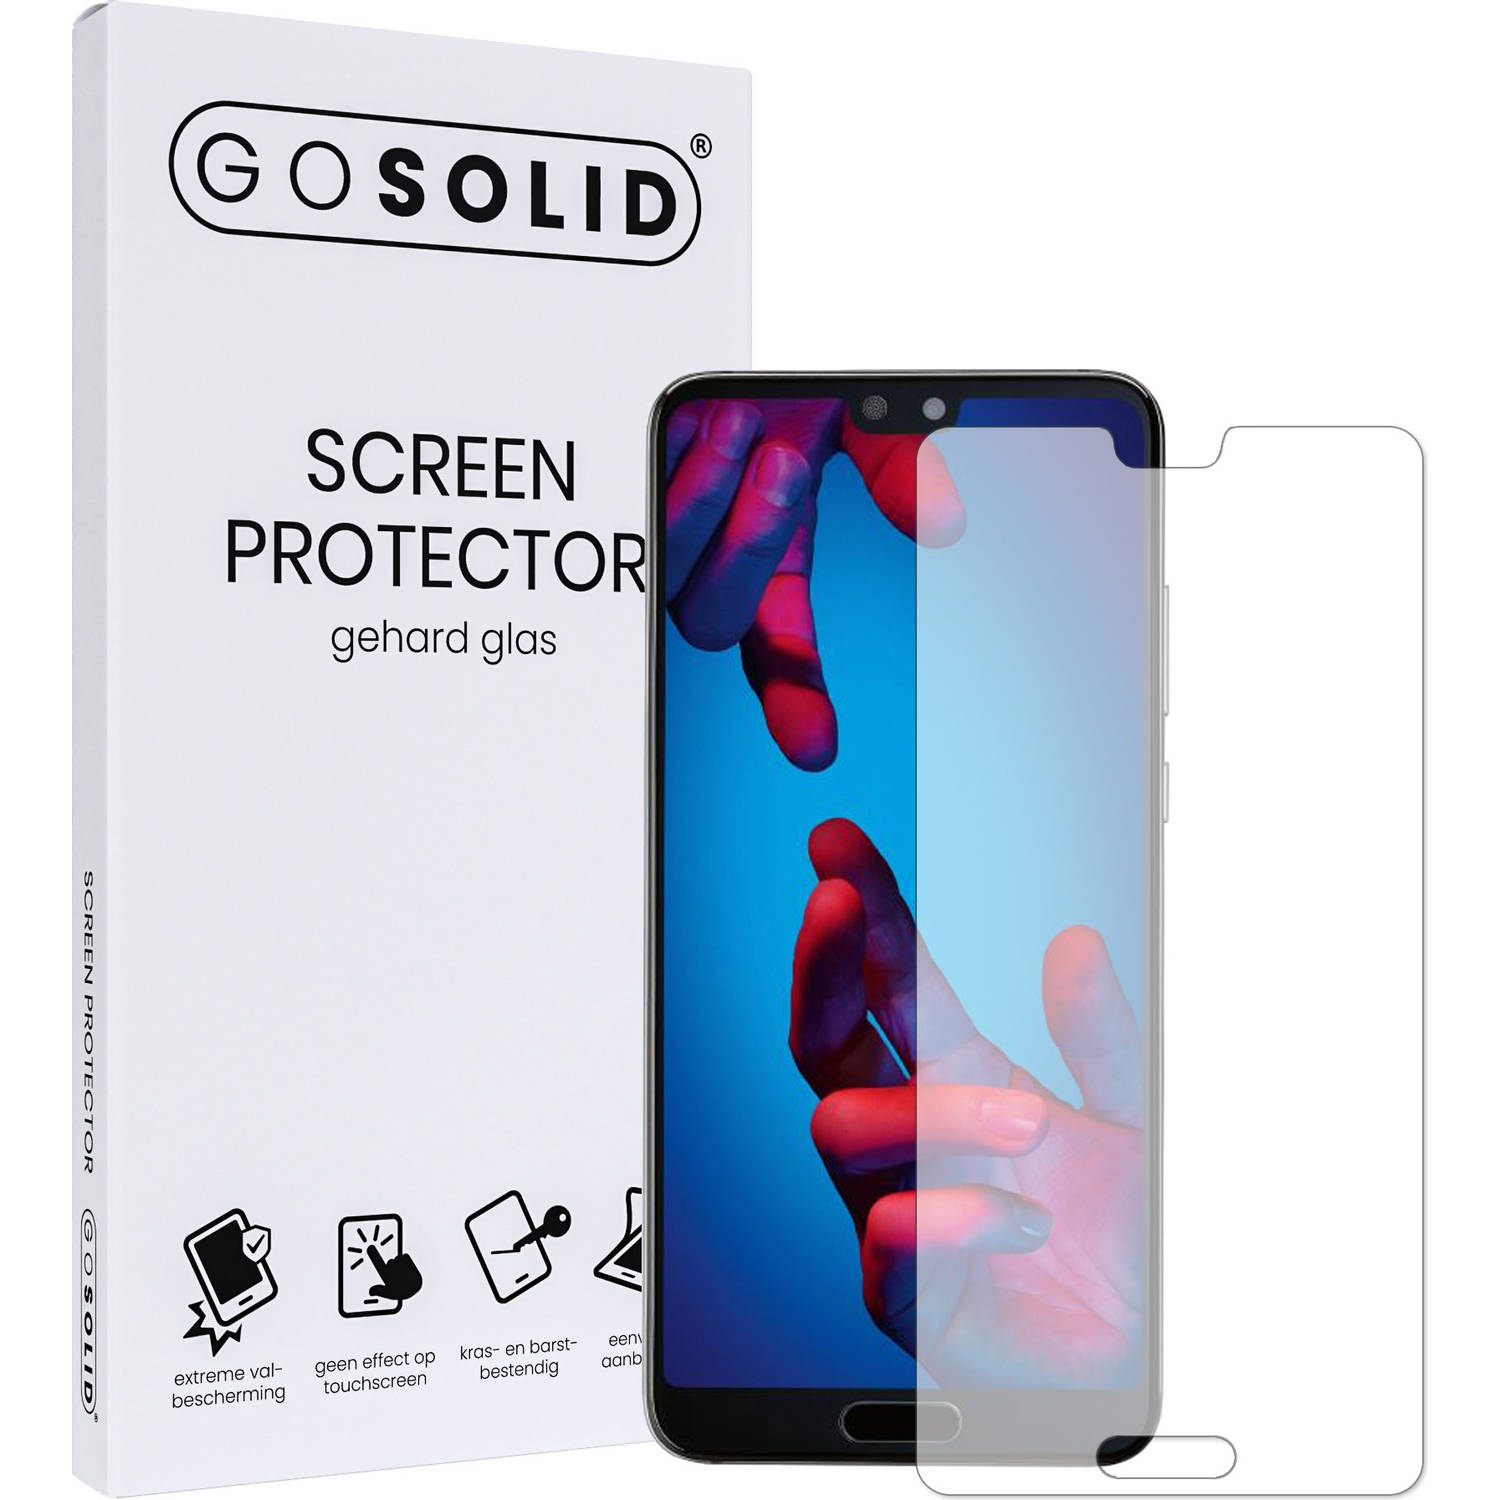 GO SOLID! Screenprotector voor Huawei P20 Lite gehard glas